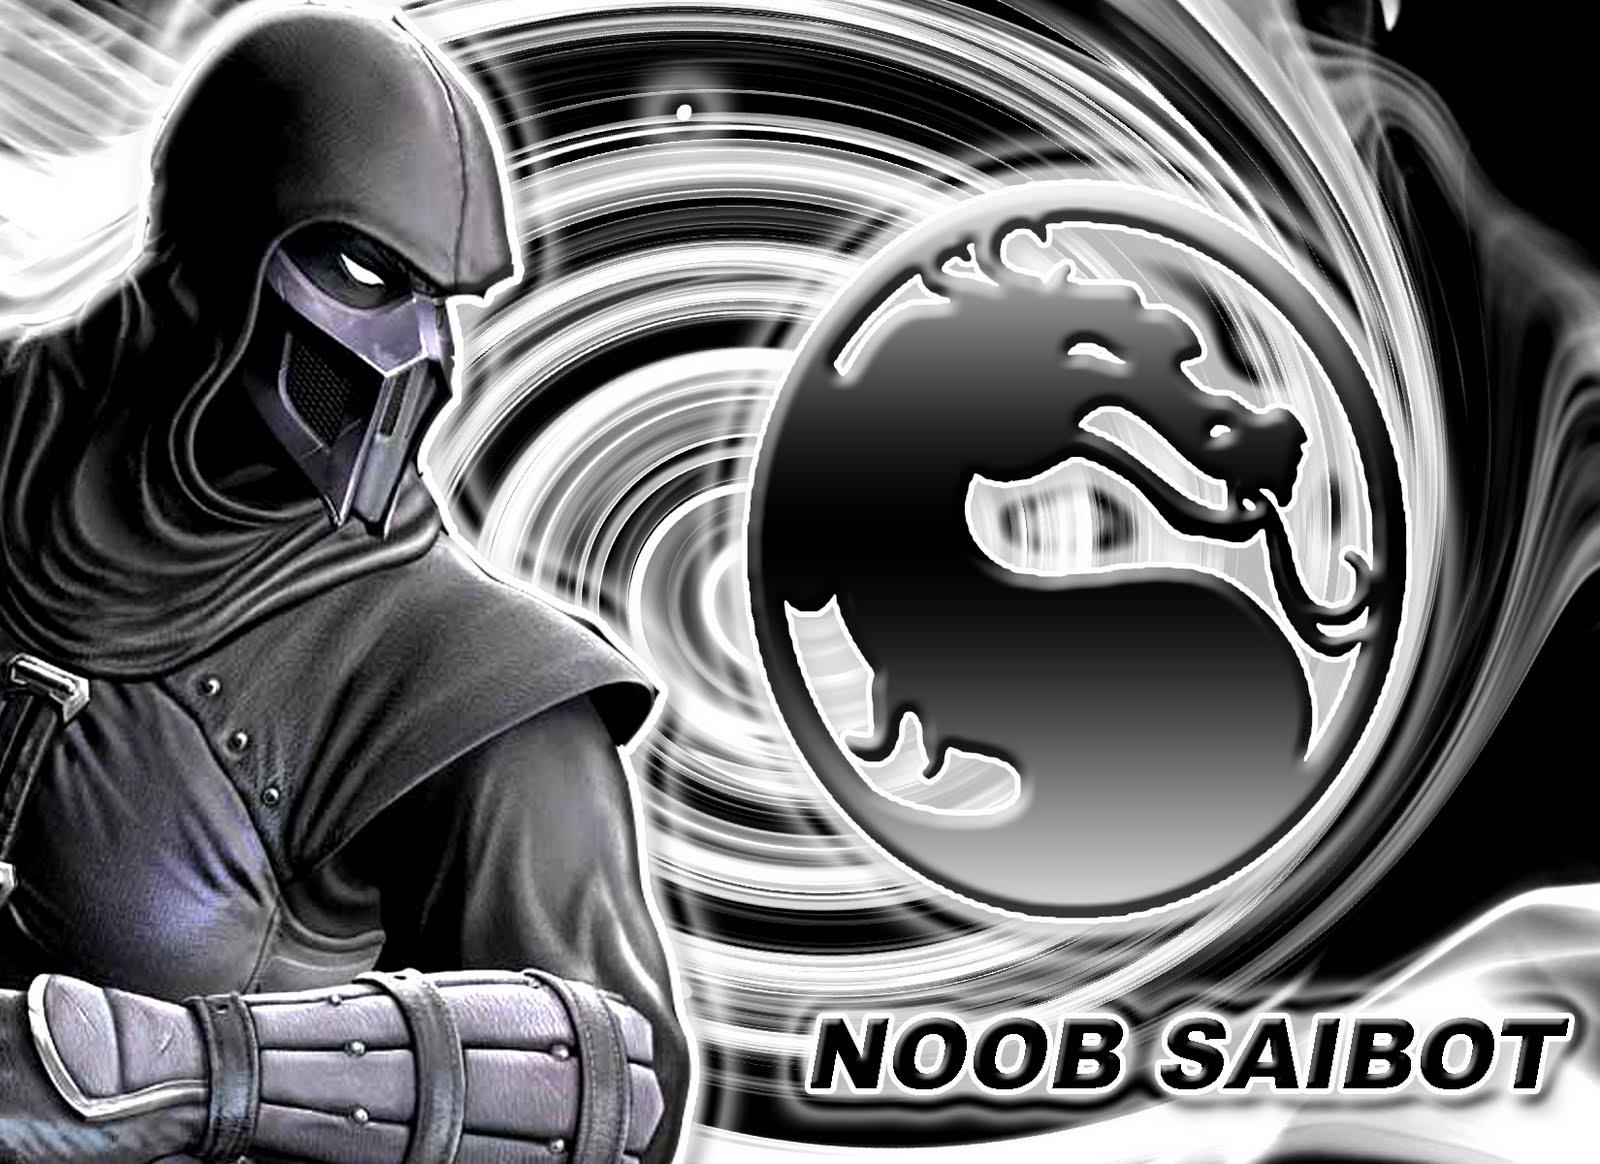 Saibot Mortal Kombat 9 Wallpaper